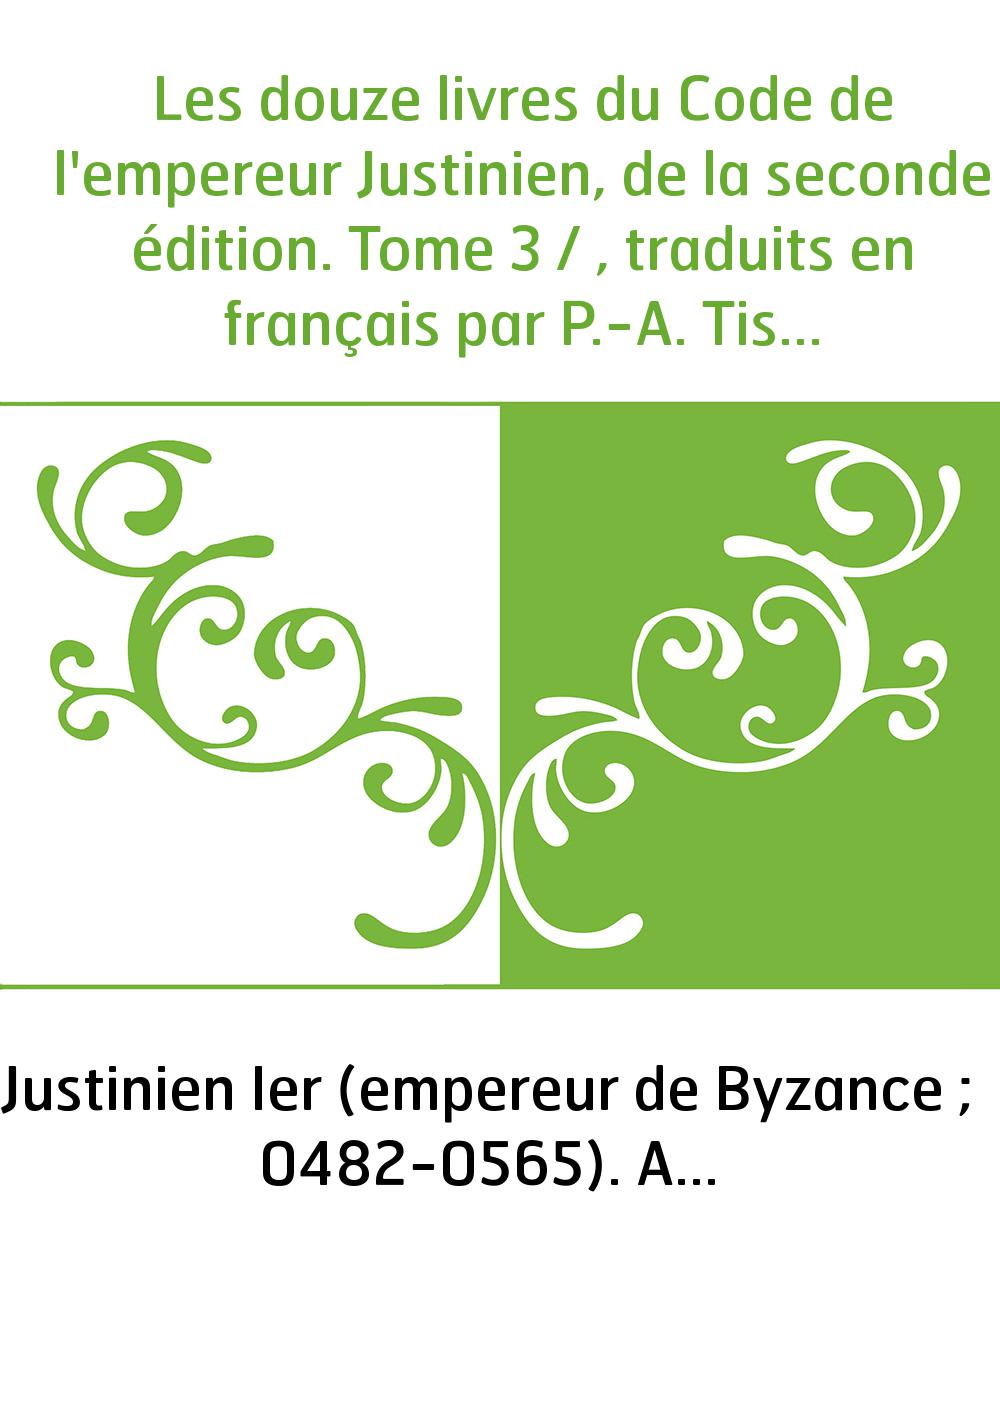 Les douze livres du Code de l'empereur Justinien, de la seconde édition. Tome 3 / , traduits en français par P.-A. Tissot,...